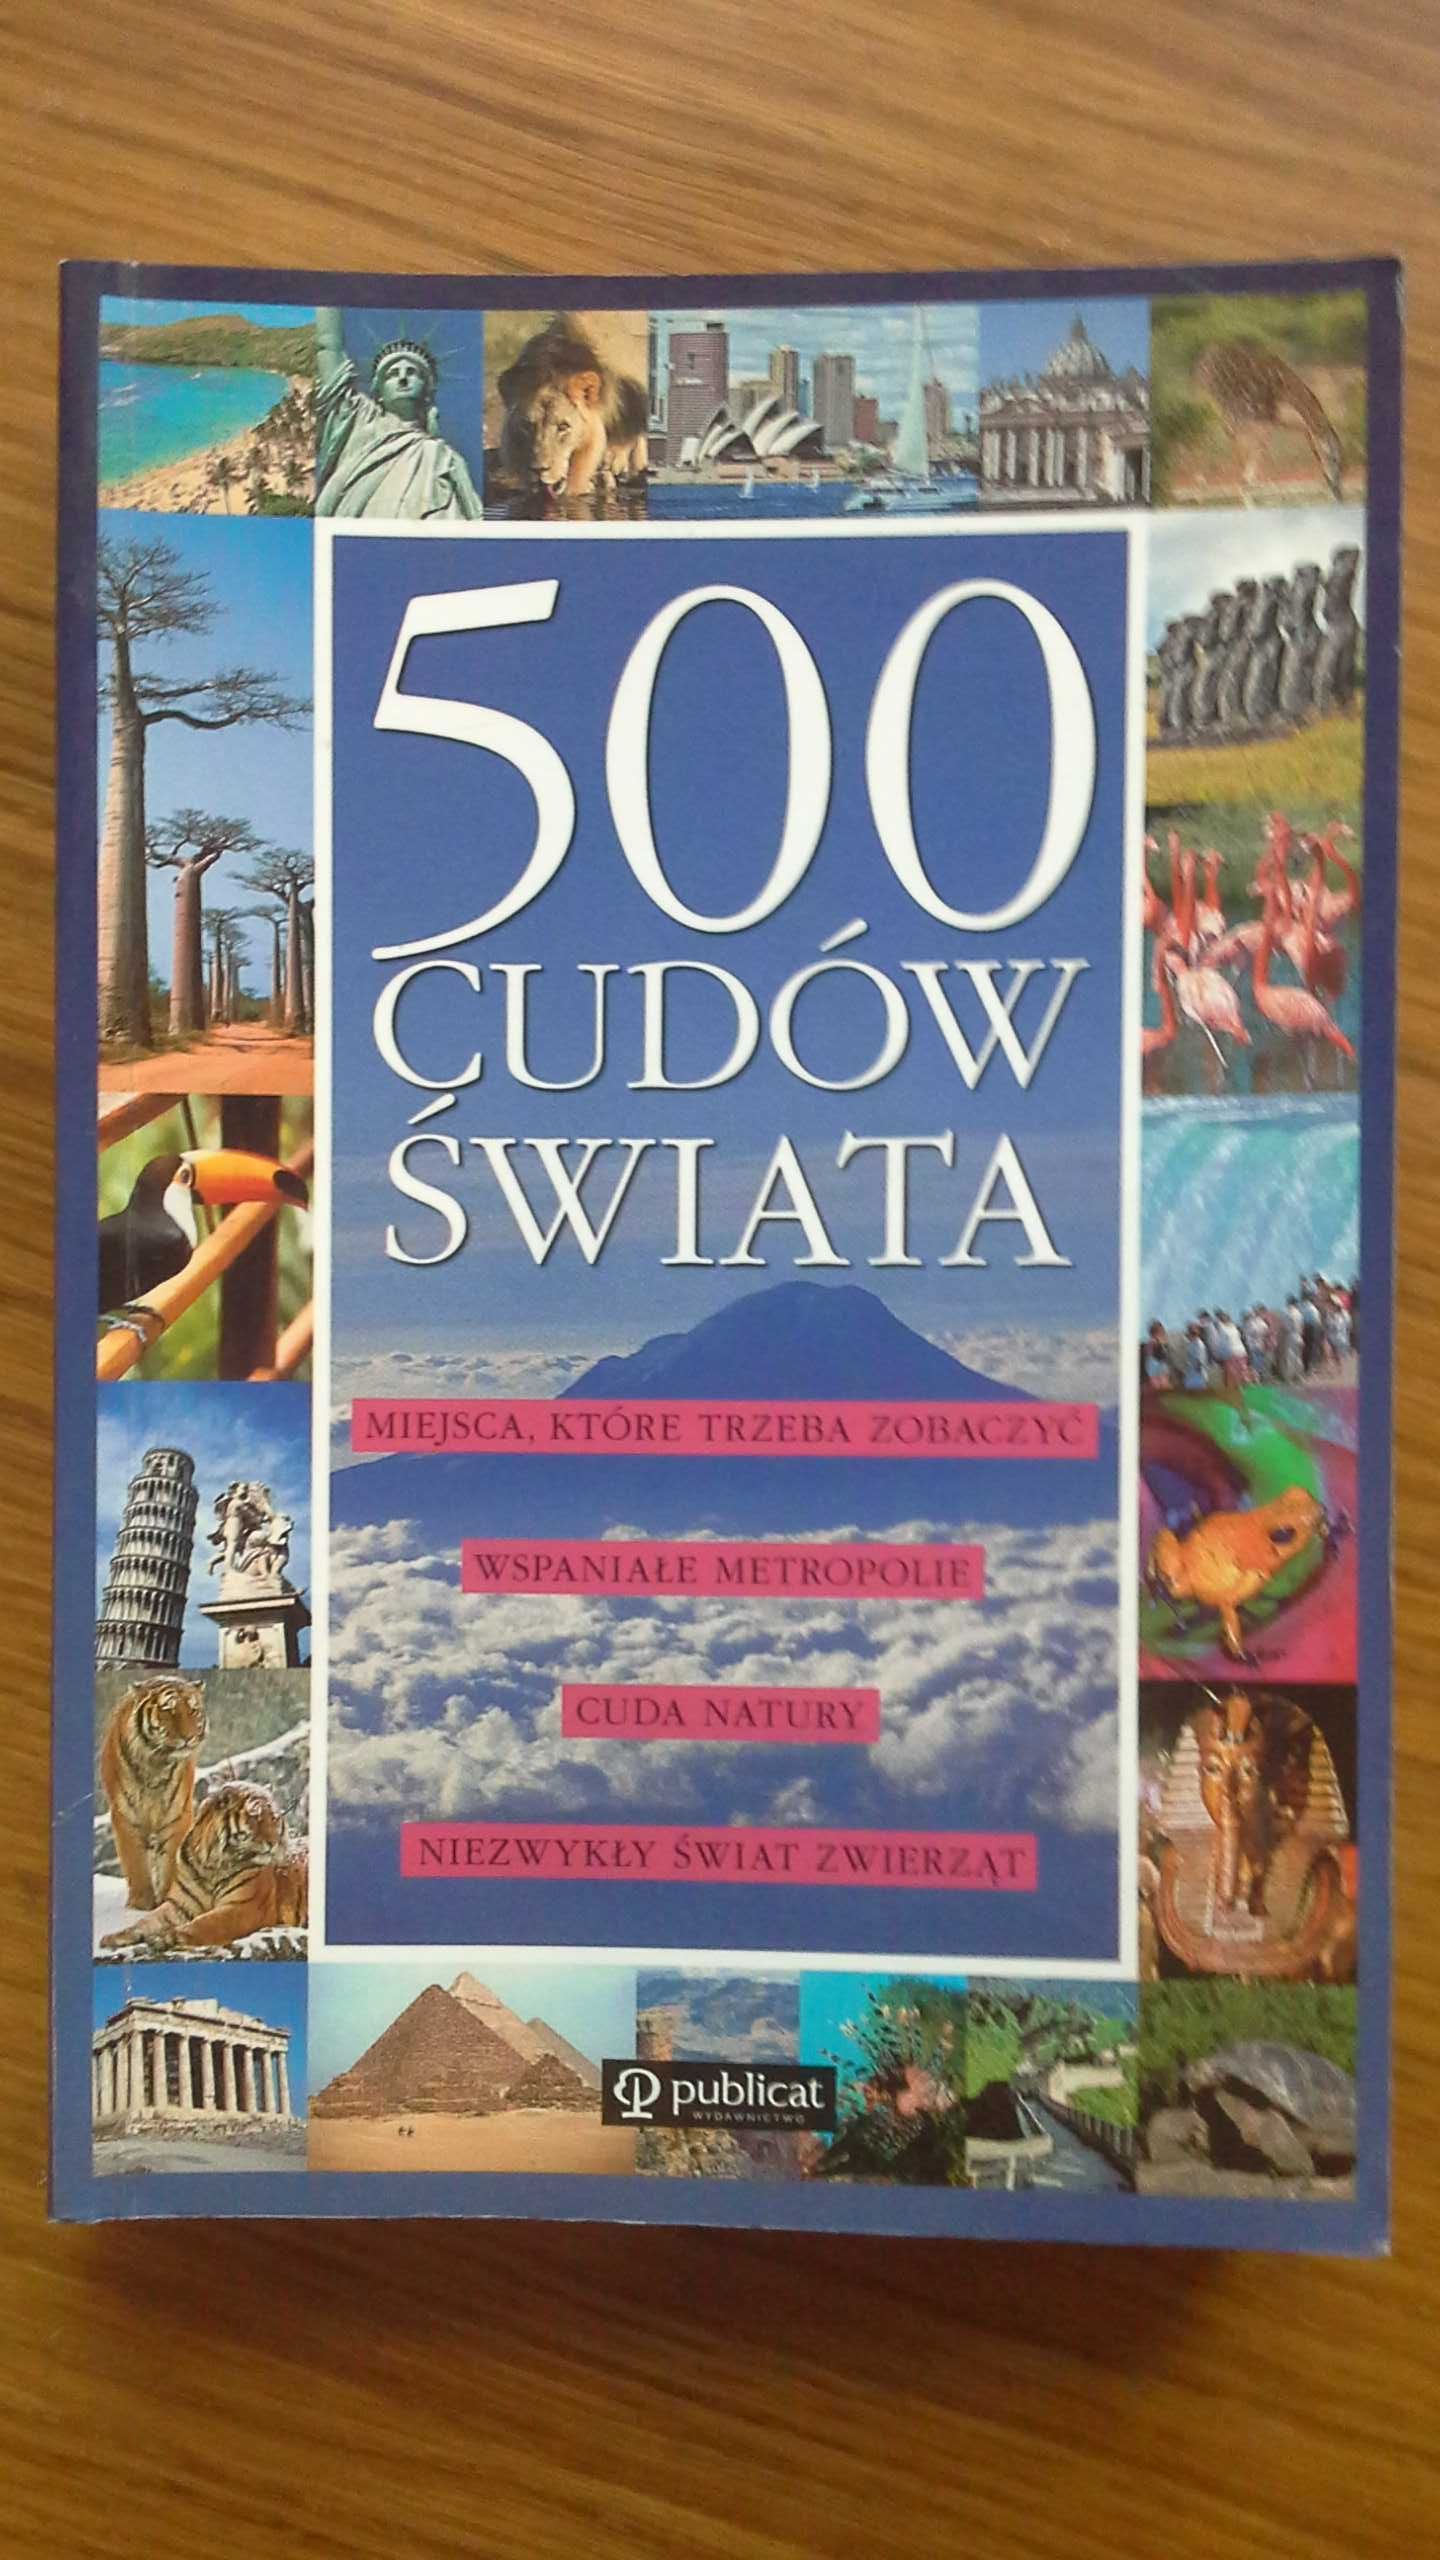 500 Cudów świata - praca zbiorowa, wydawnictwo Publicat  Nowa